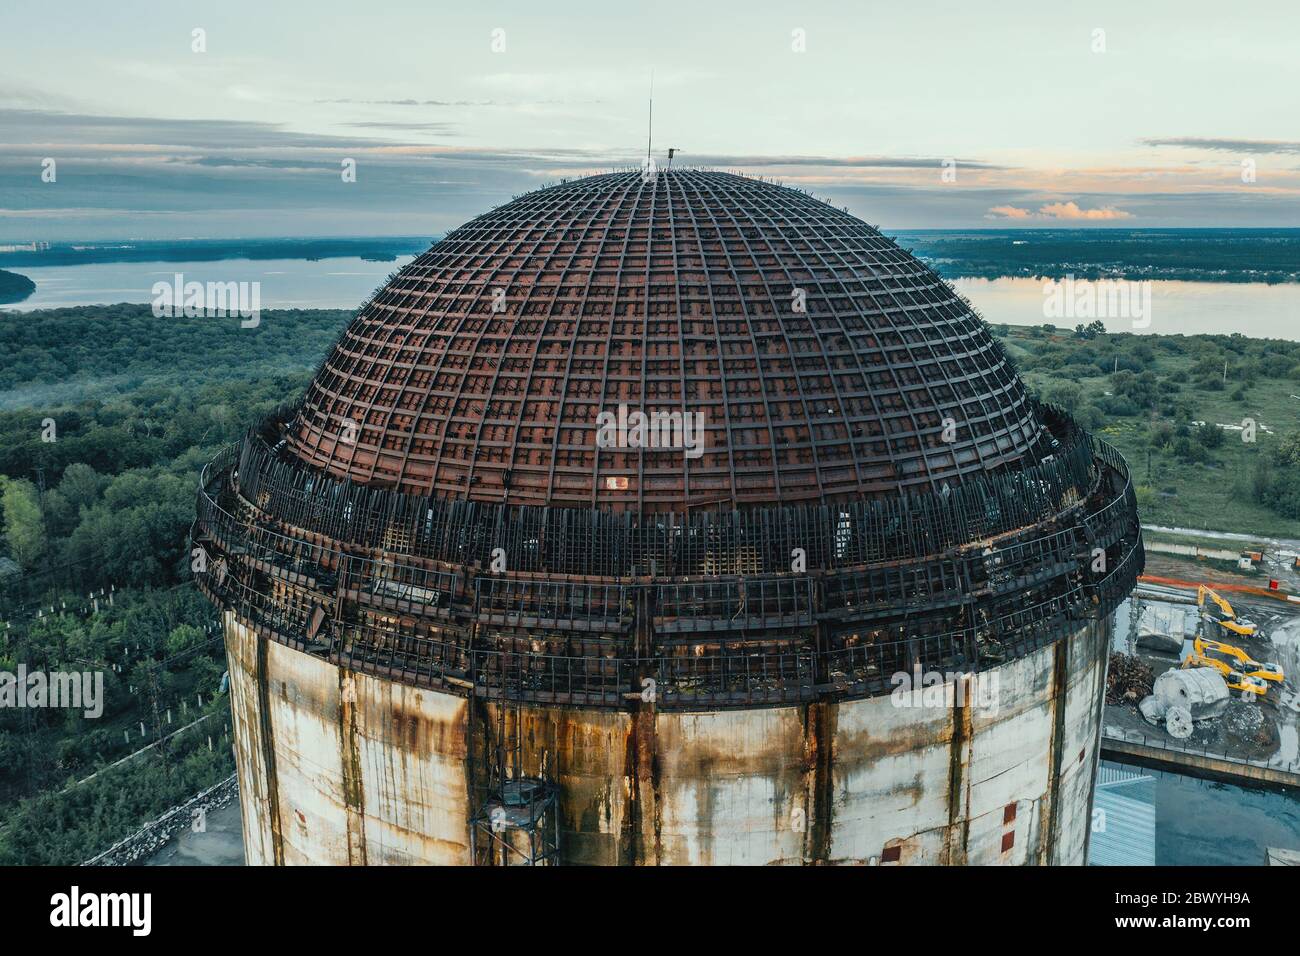 Unvollendetes Kernkraftwerk, kreisförmige Metallkonstruktion Kuppeldach, Industriegebäude, Luftaufnahme von oben. Stockfoto